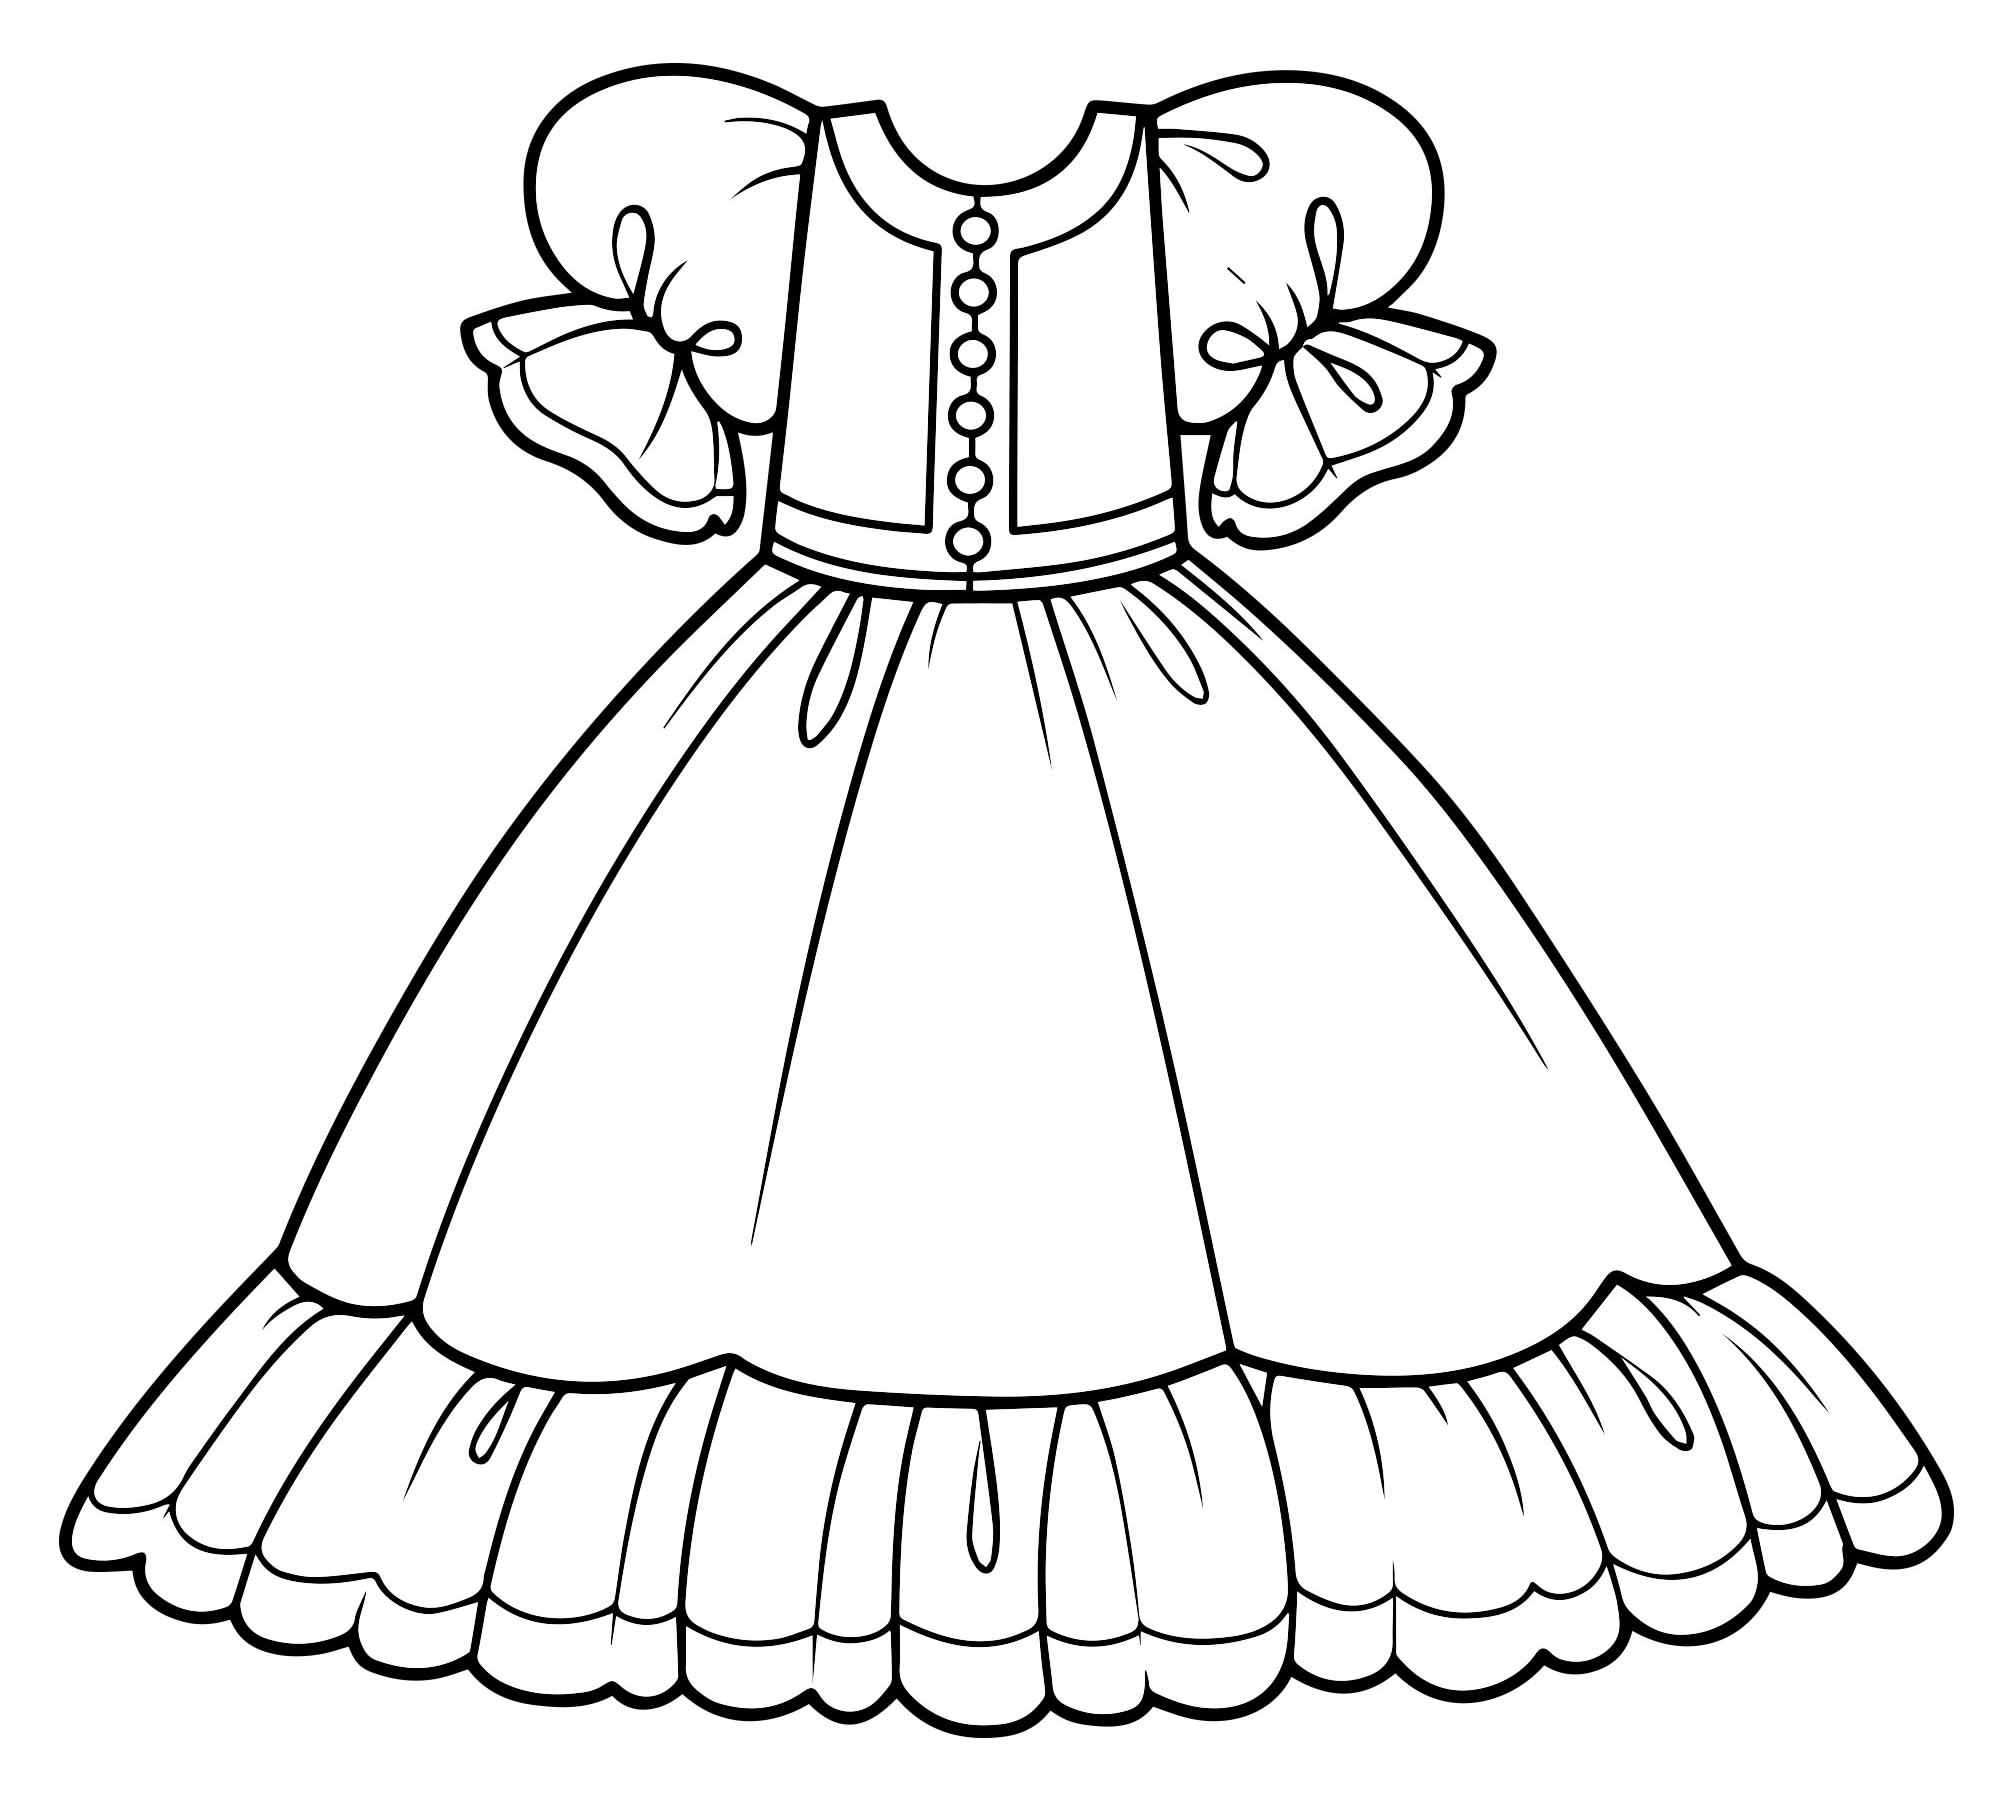 Раскраска юбка для девочки ♥ Онлайн и Распечатать Бесплатно!